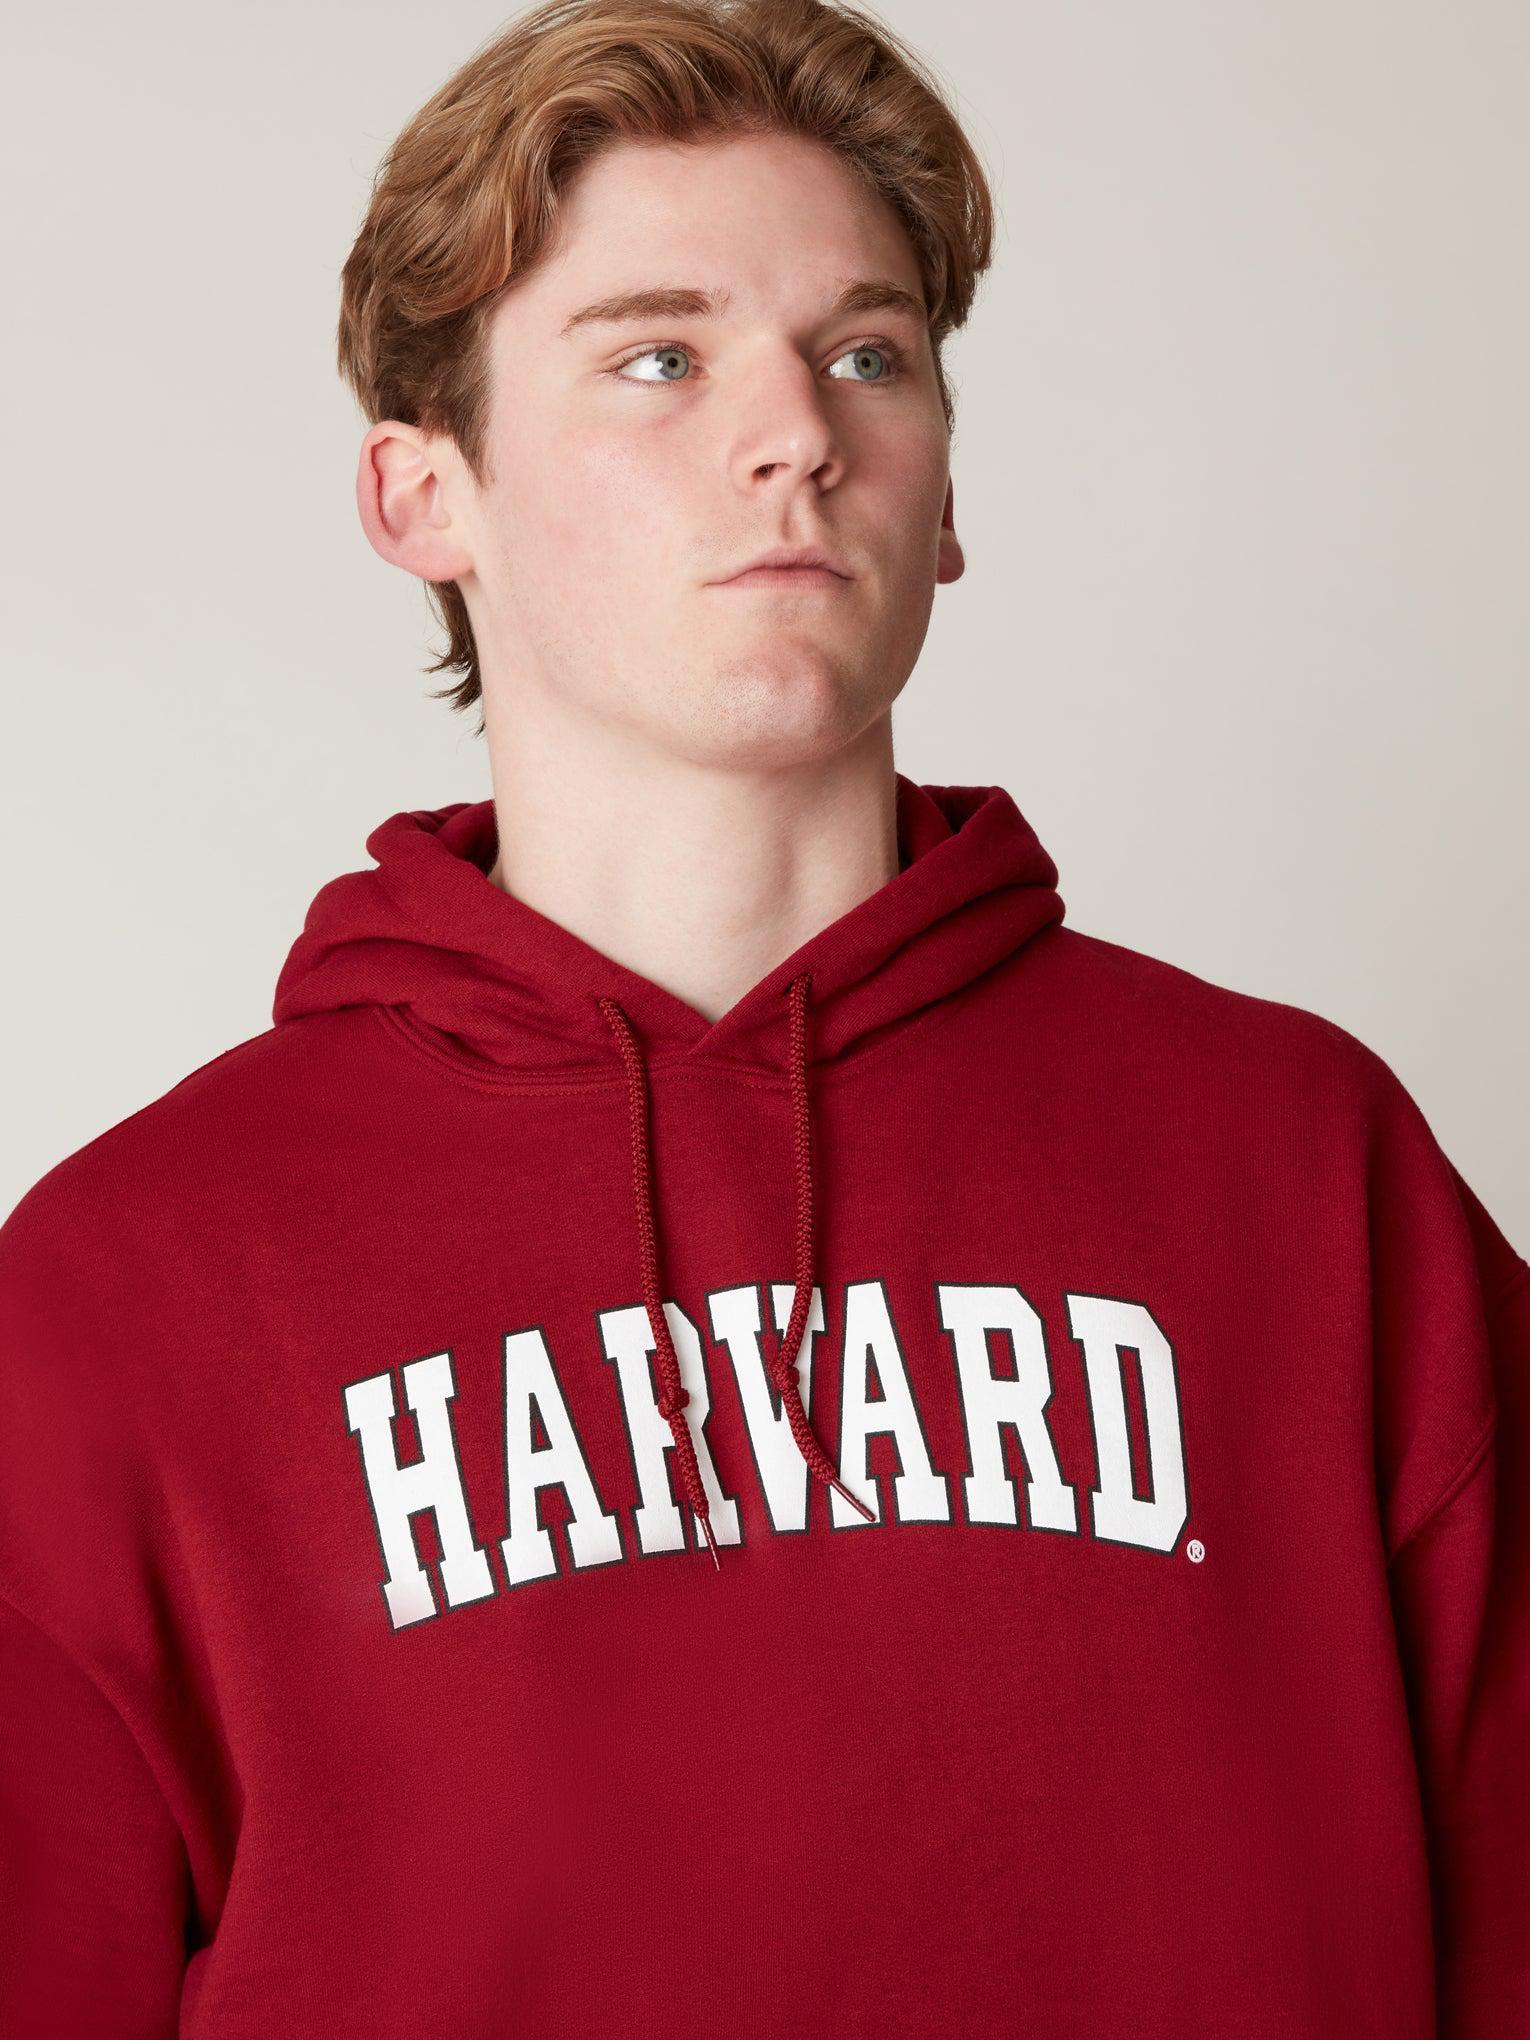 Harvard Hooded Arc Sweatshirt – The Harvard Shop